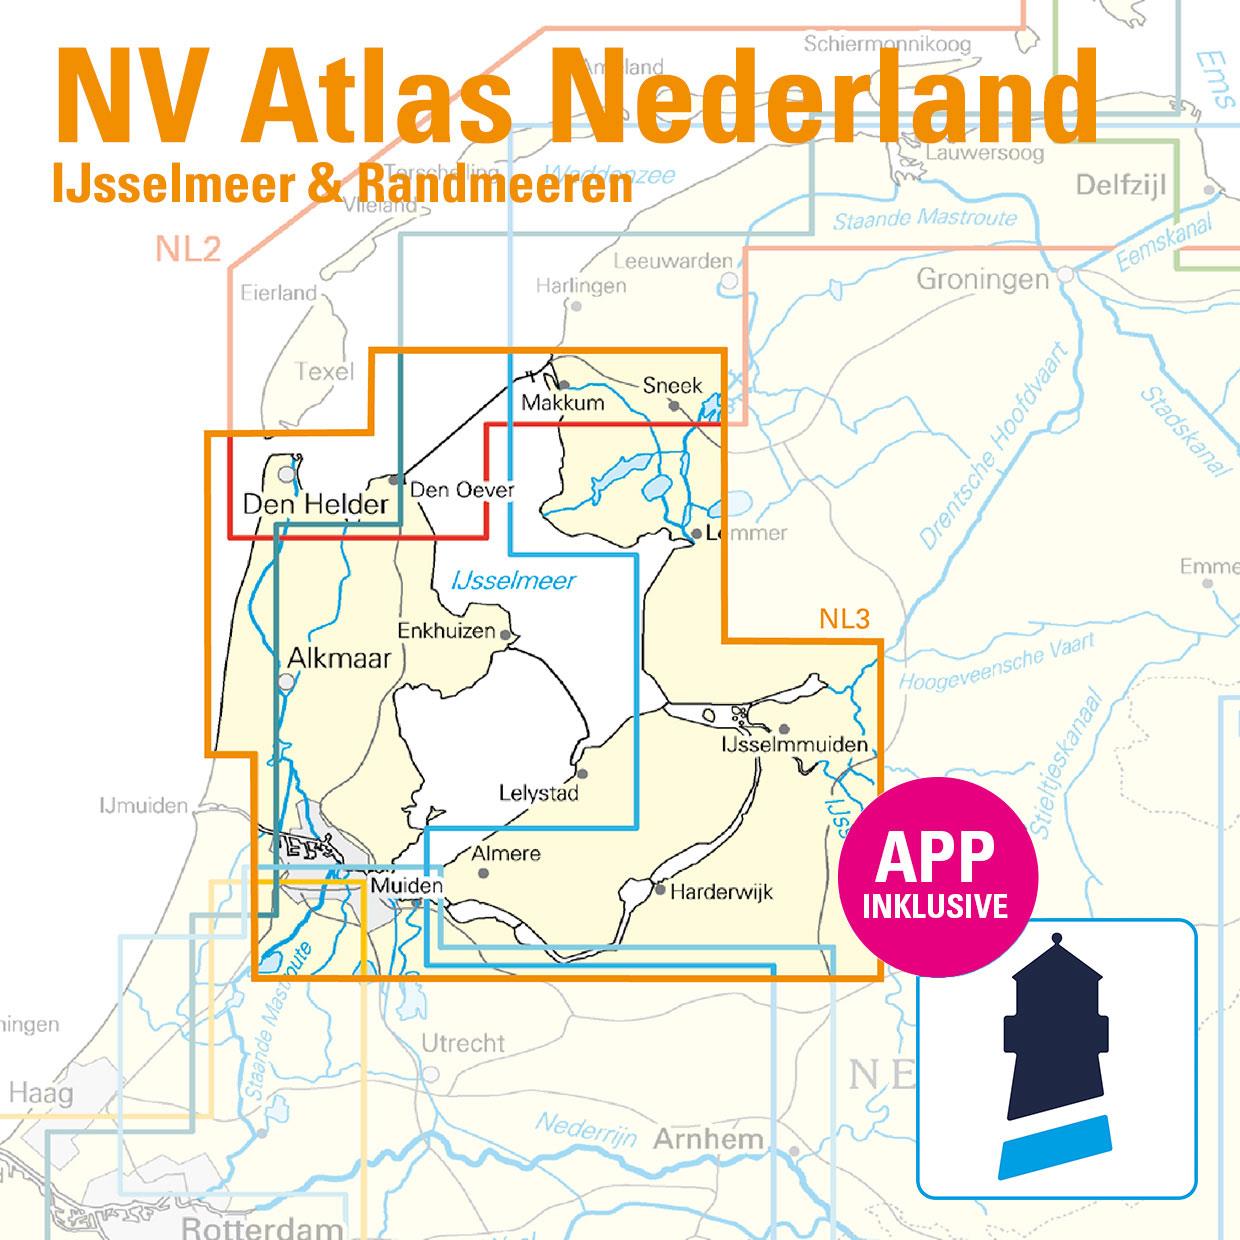 NV Charts Nederland NL3 - IJsselmeer, Markermeer en Randmeeren